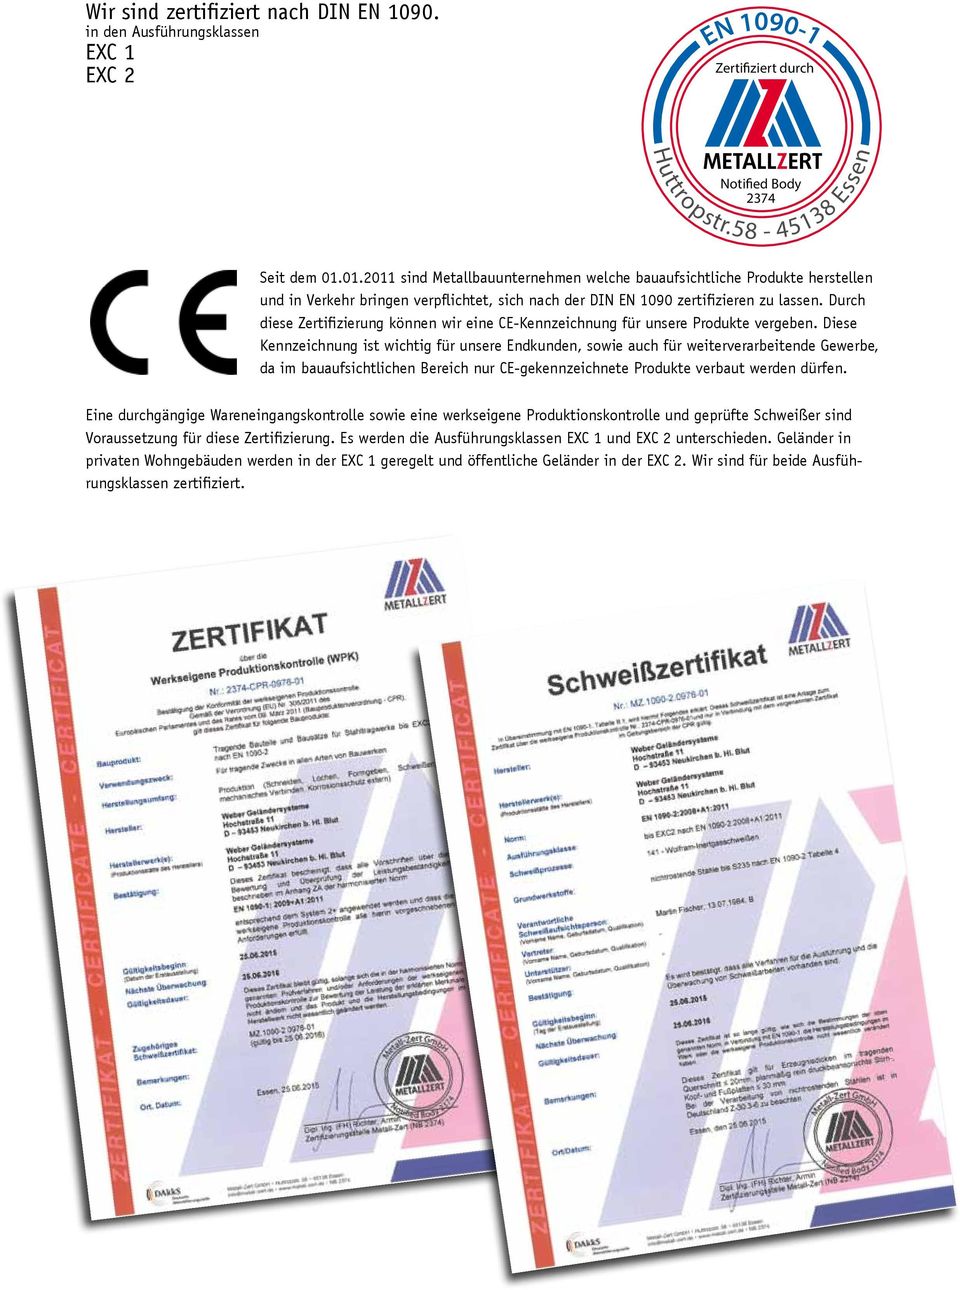 Durch diese Zertifizierung können wir eine CE-Kennzeichnung für unsere Produkte vergeben.